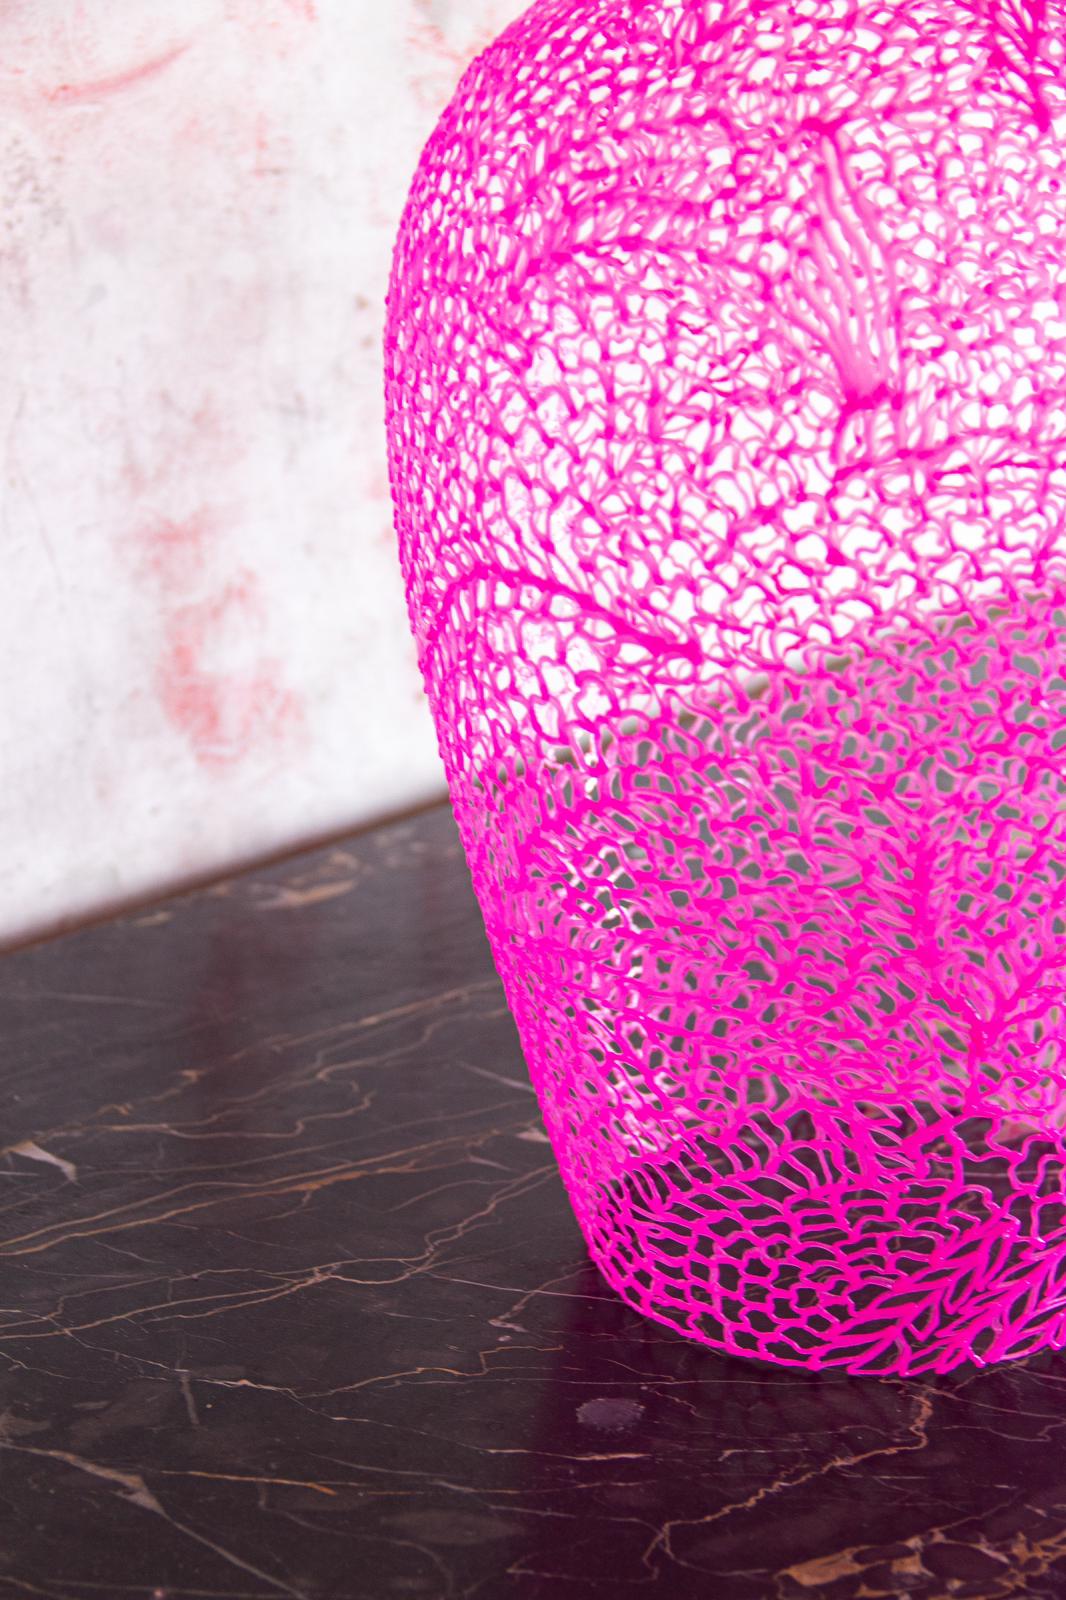 Gallery work - pink flower - one piece